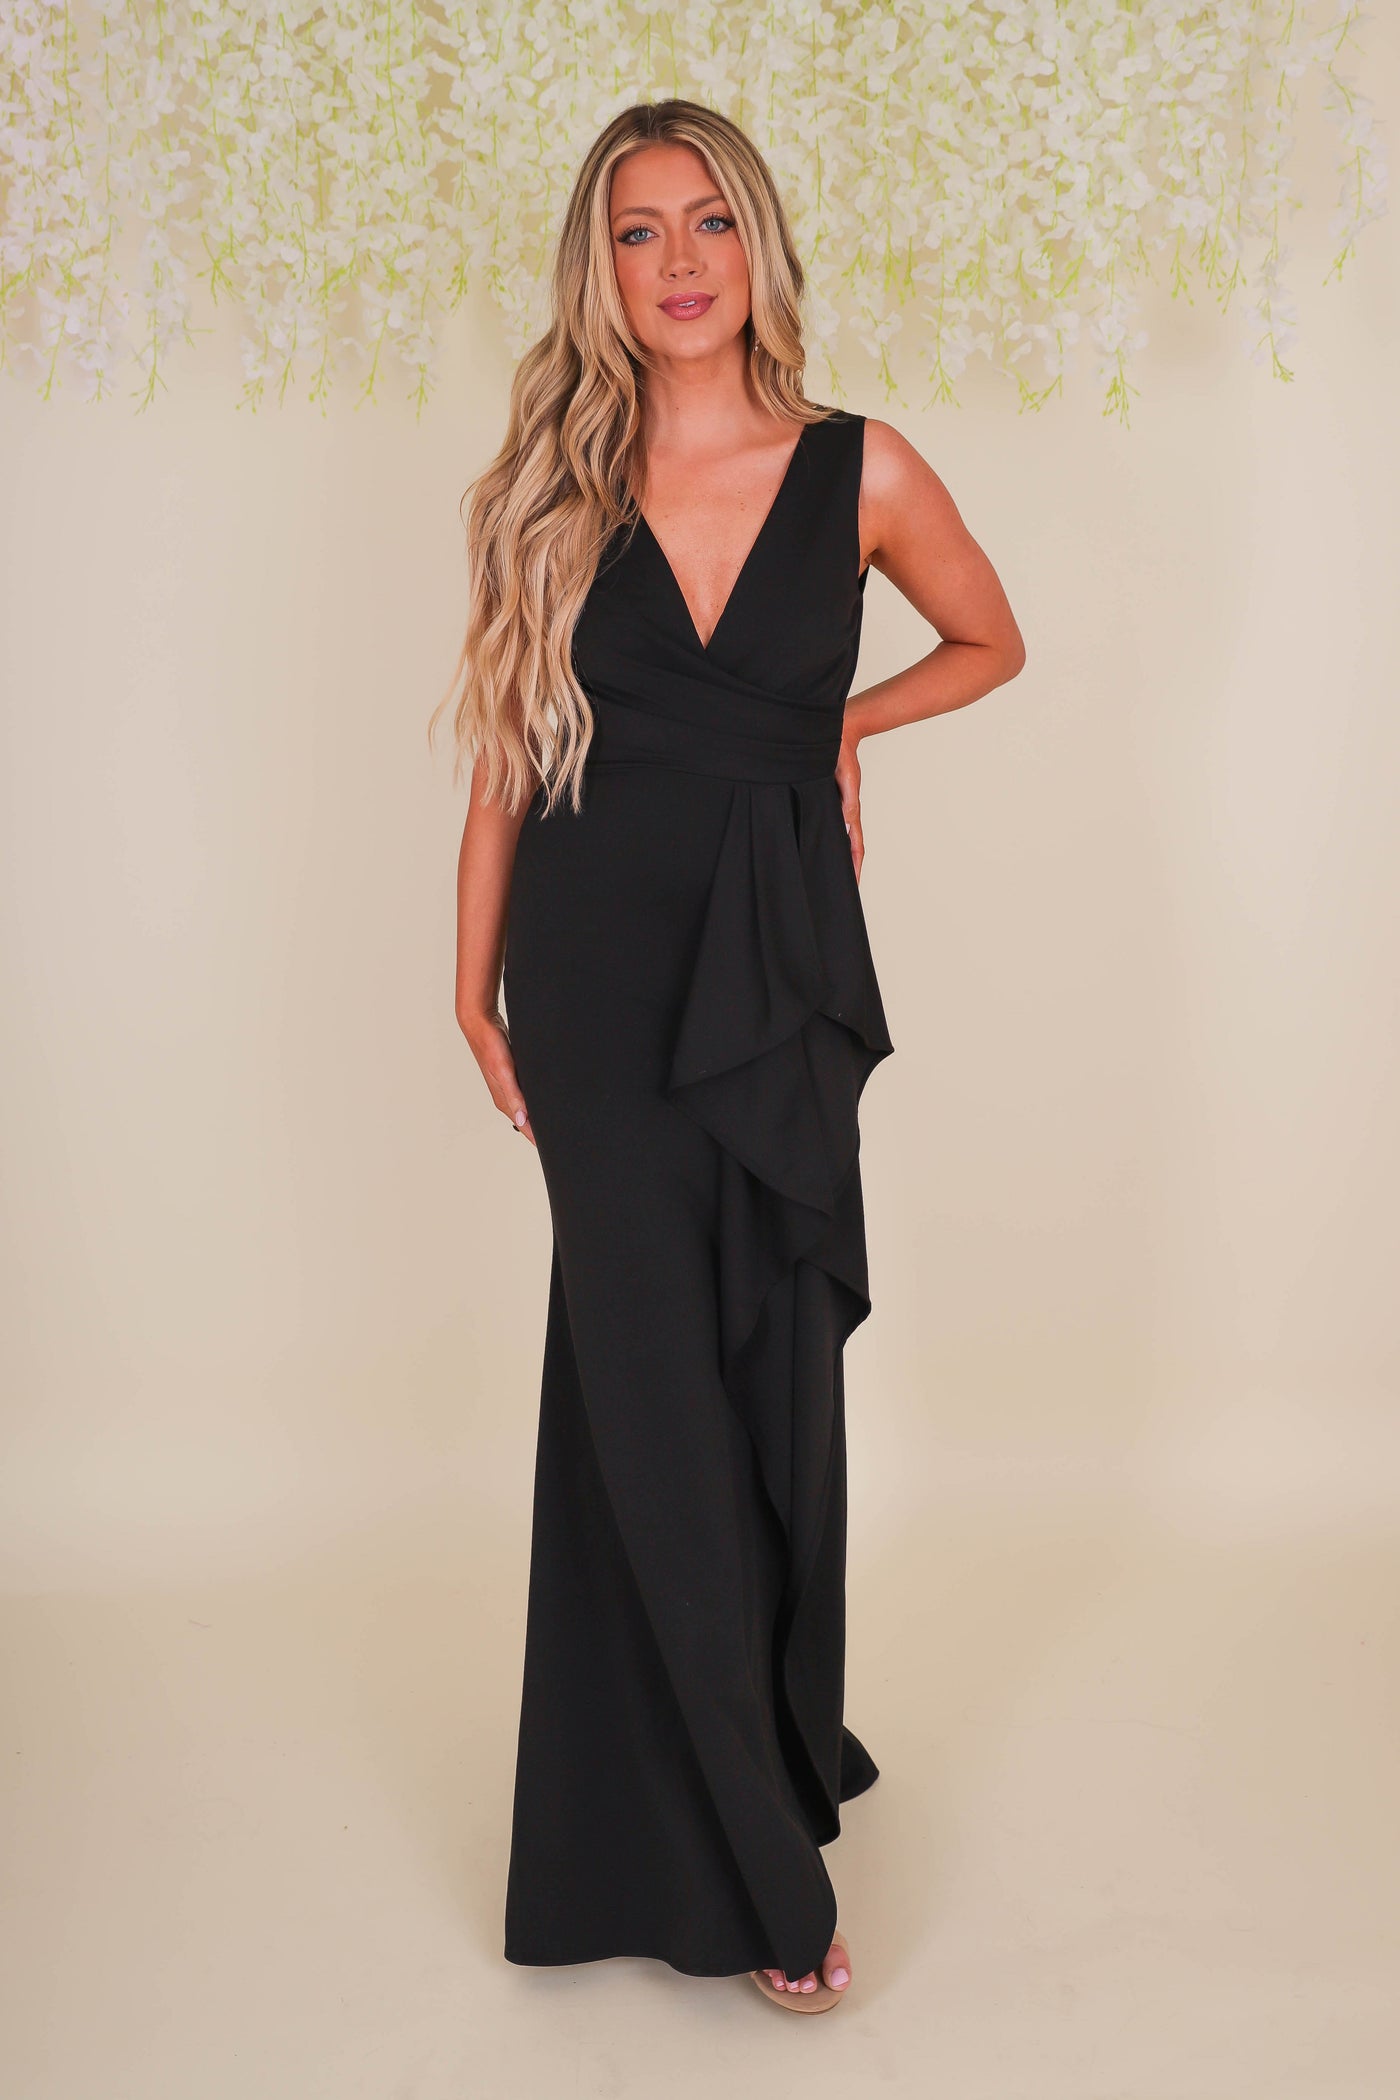 Black Cocktail Dress- Women's Black Formal Dress- Formal Wedding Guest Dresses